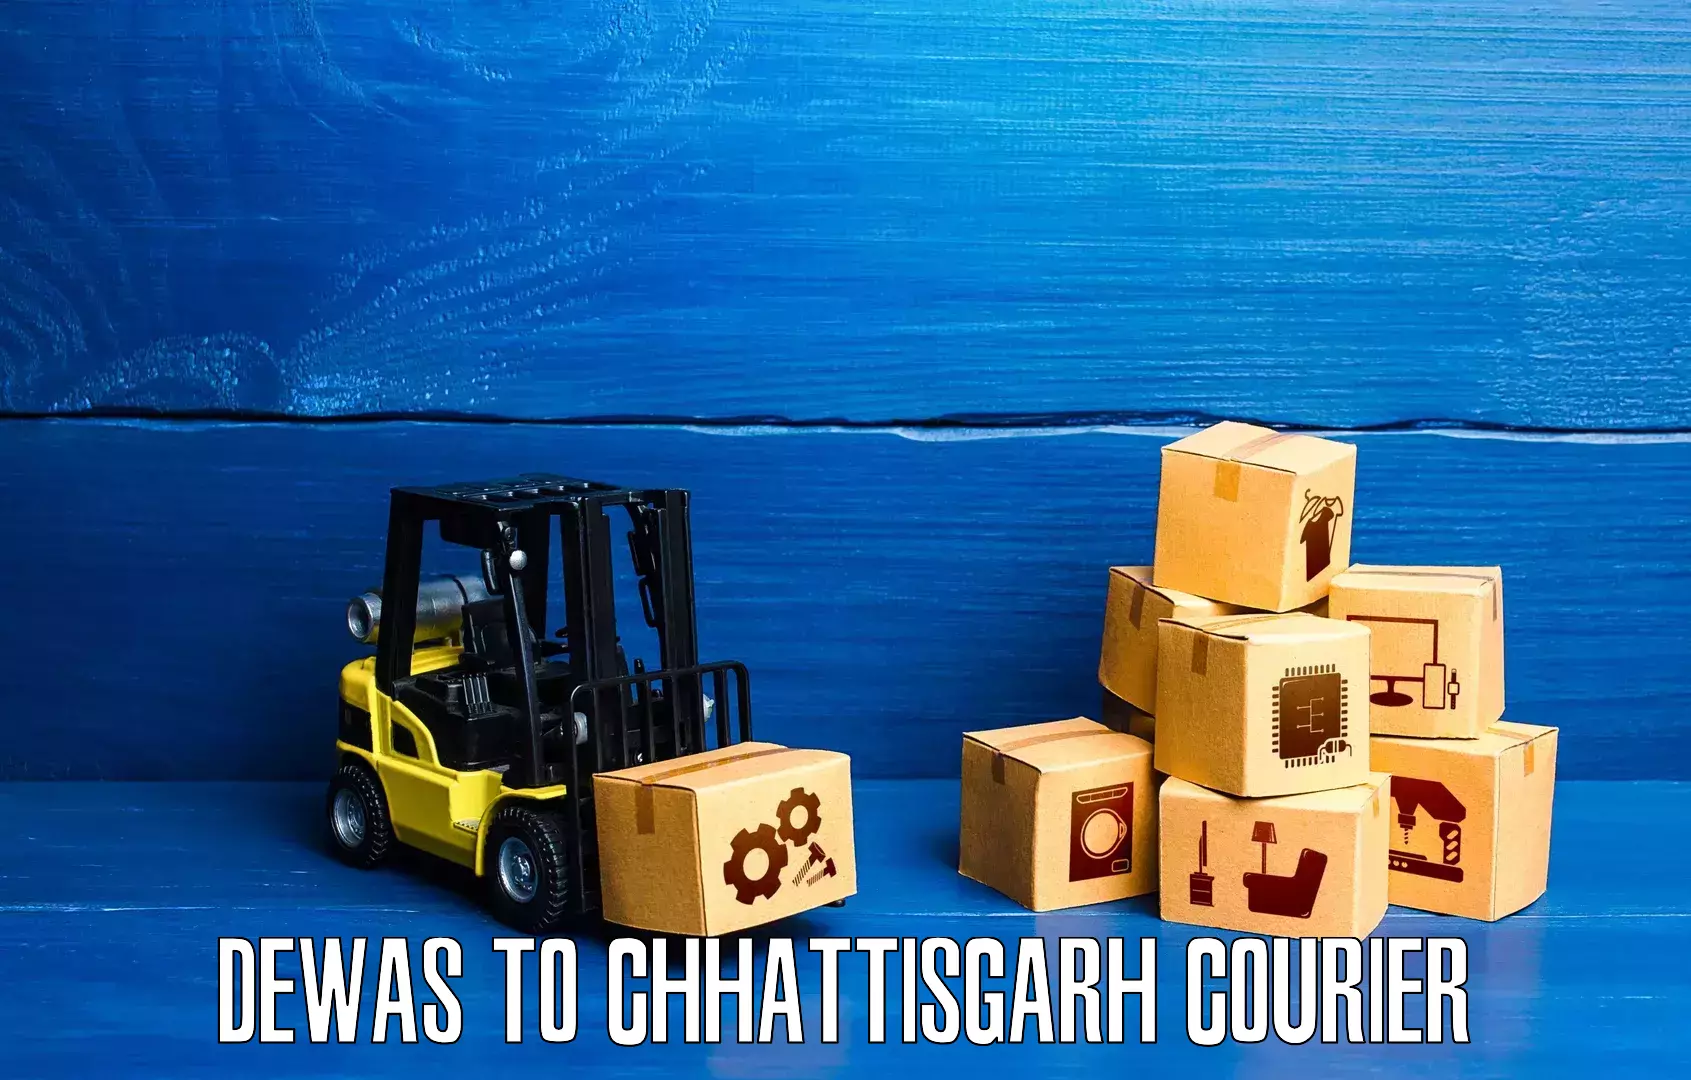 Domestic courier Dewas to Korea Chhattisgarh